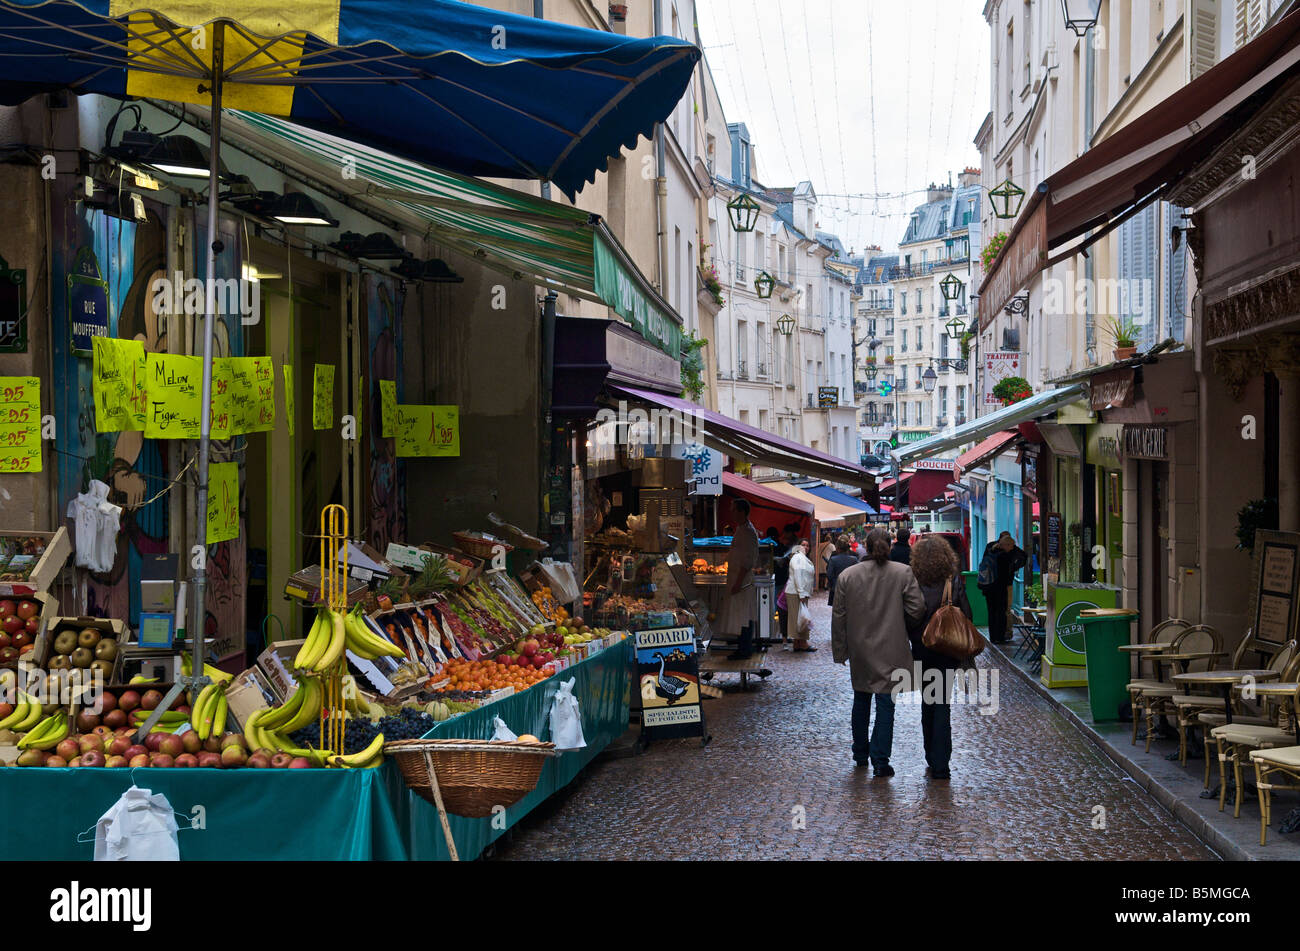 Rue Mouffetard street market in Paris France Stock Photo